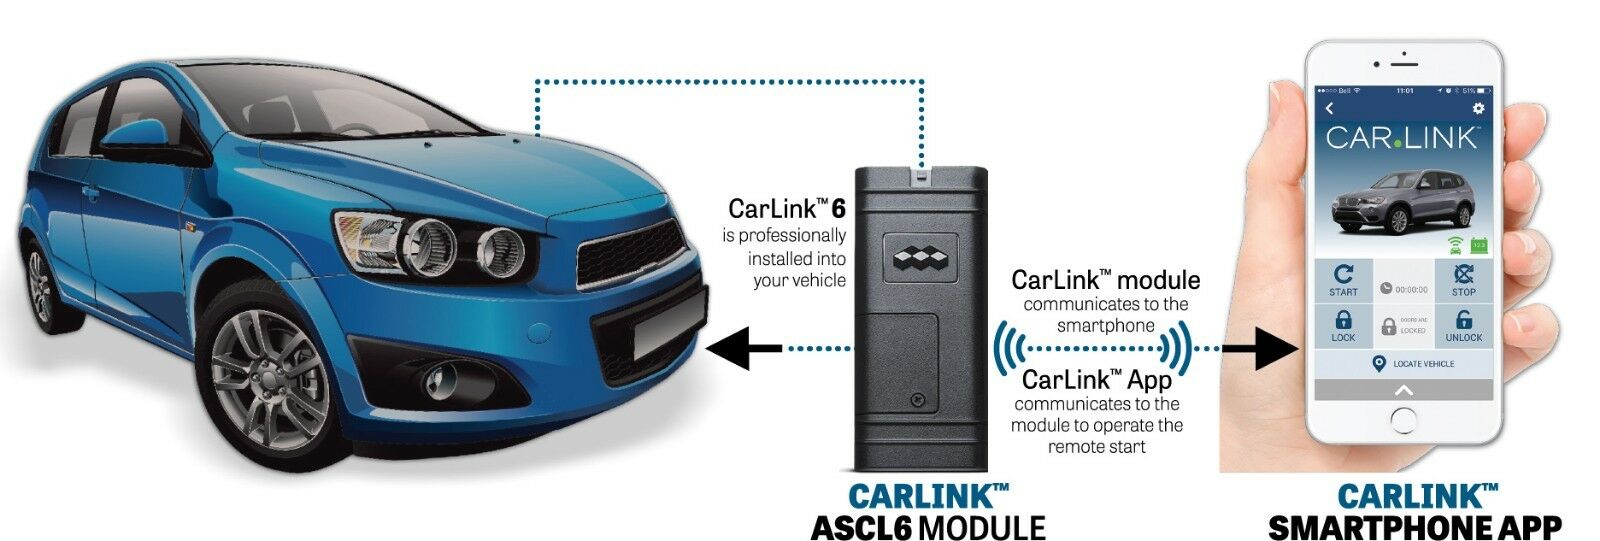 CarLink ASCL6 Telematics Module